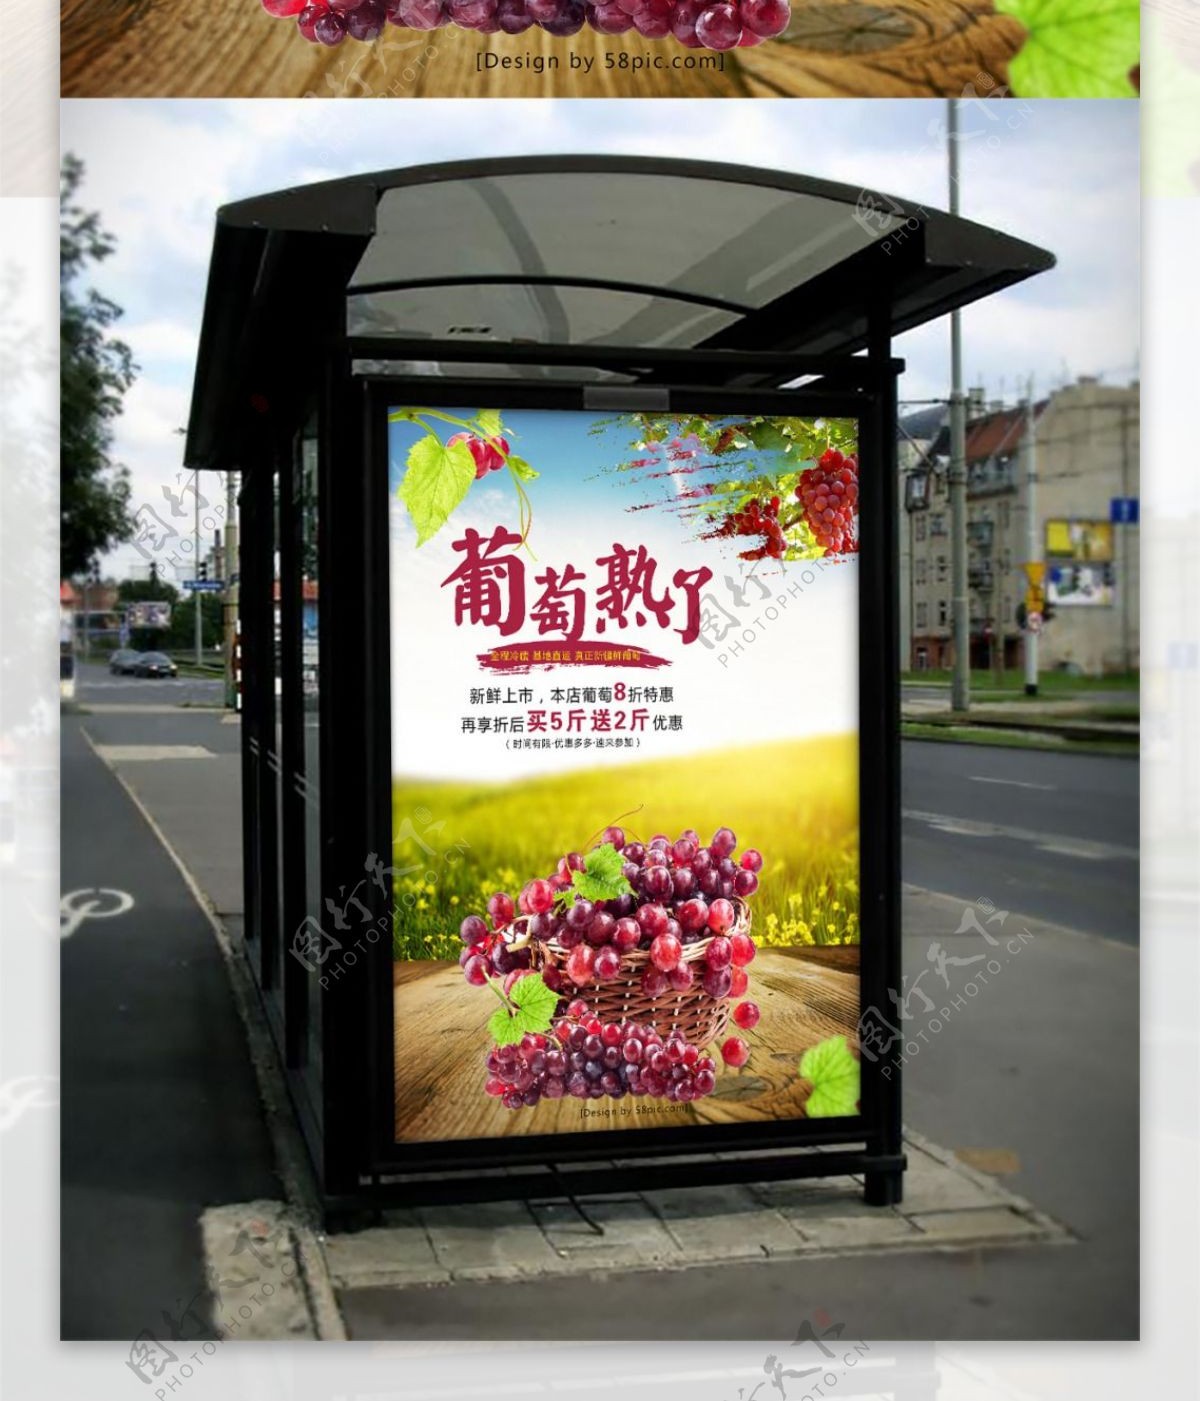 葡萄熟了促销宣传合成海报